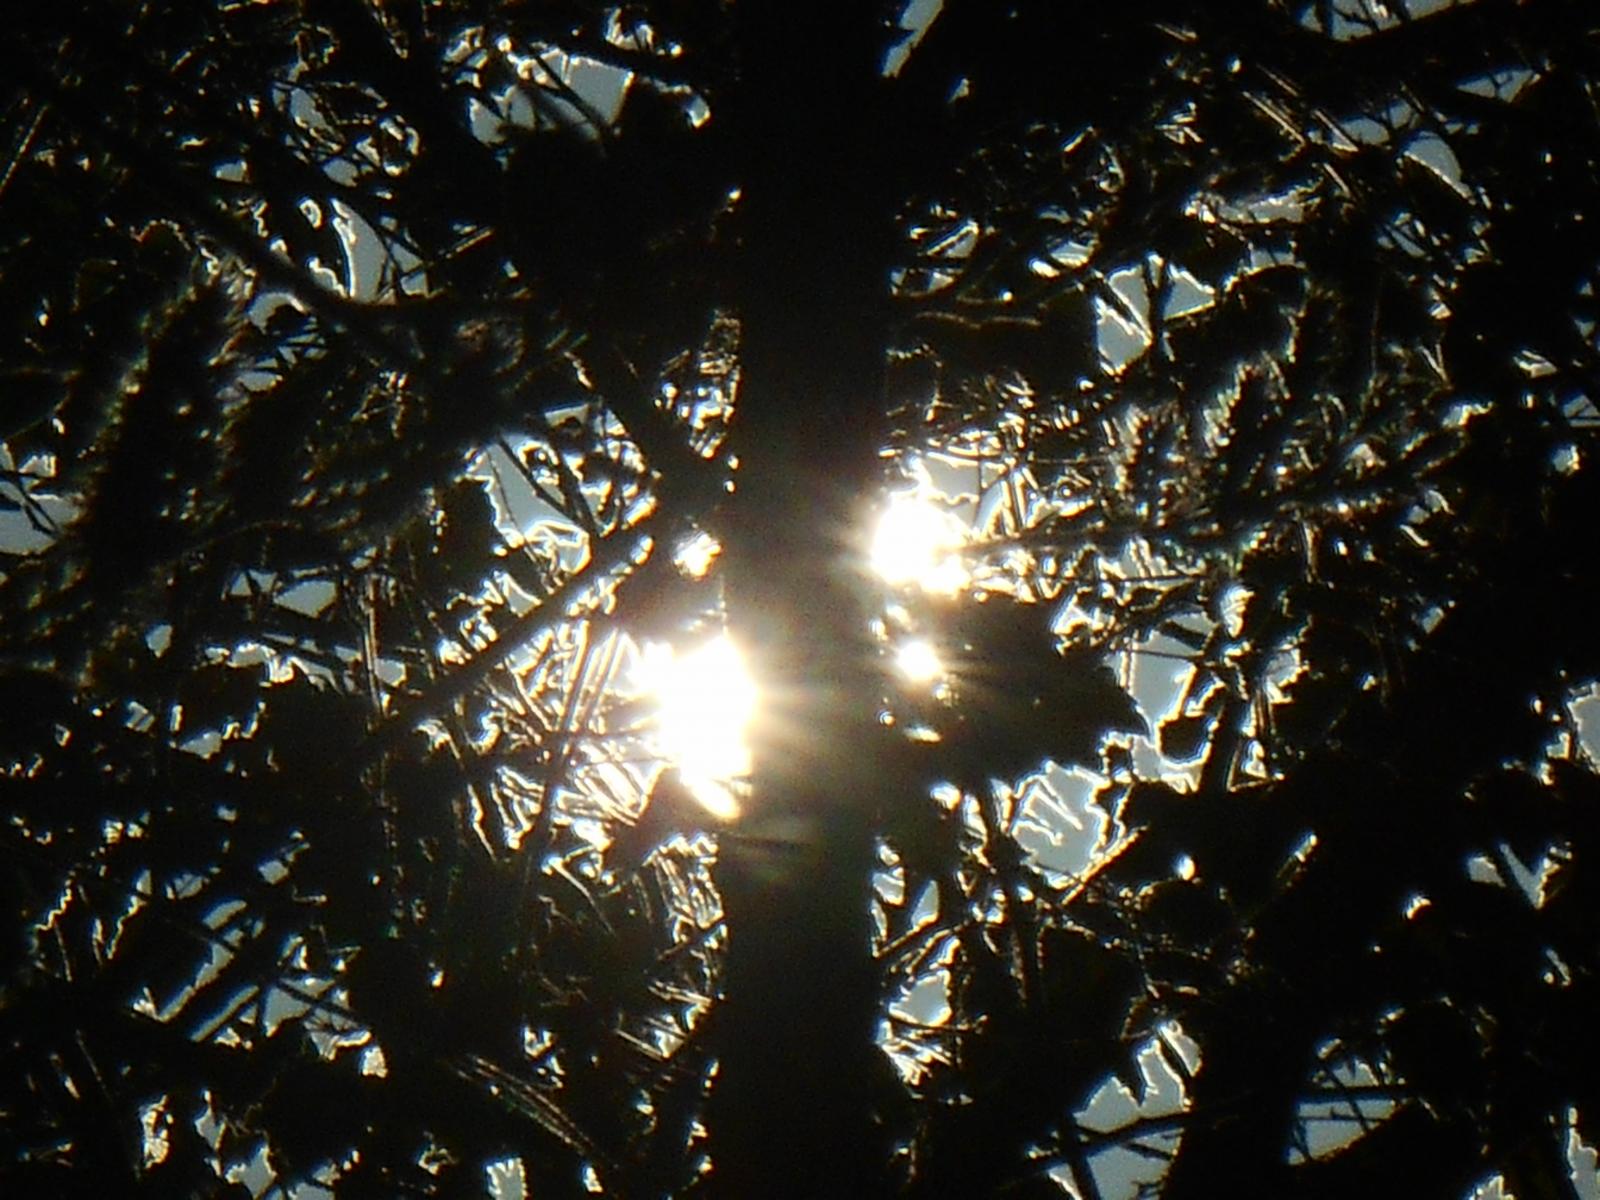 Magnifique contraste entre le bois et le soleil (Les Moutiers en Retz)